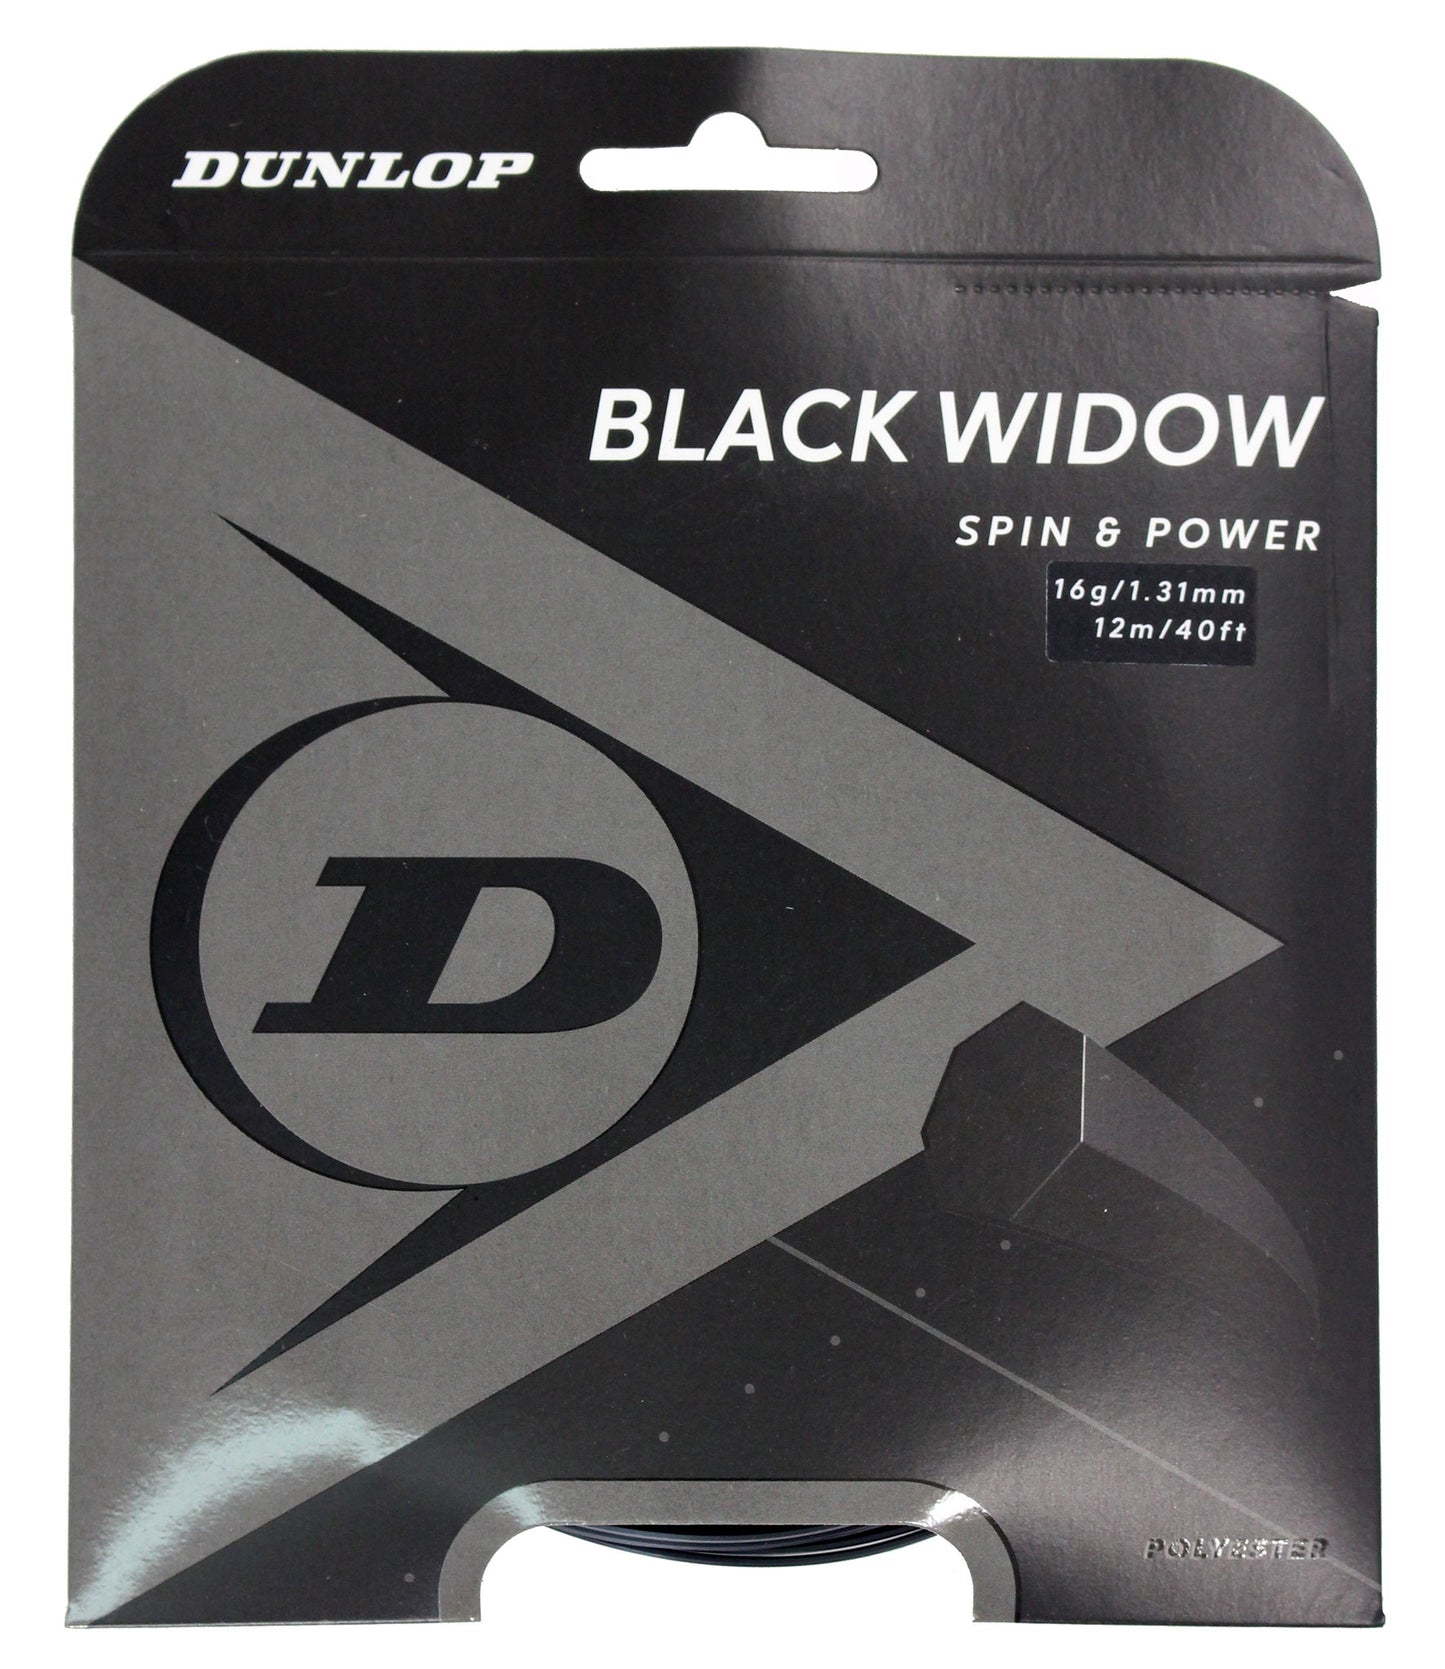 Dunlop Black Widow 130/16